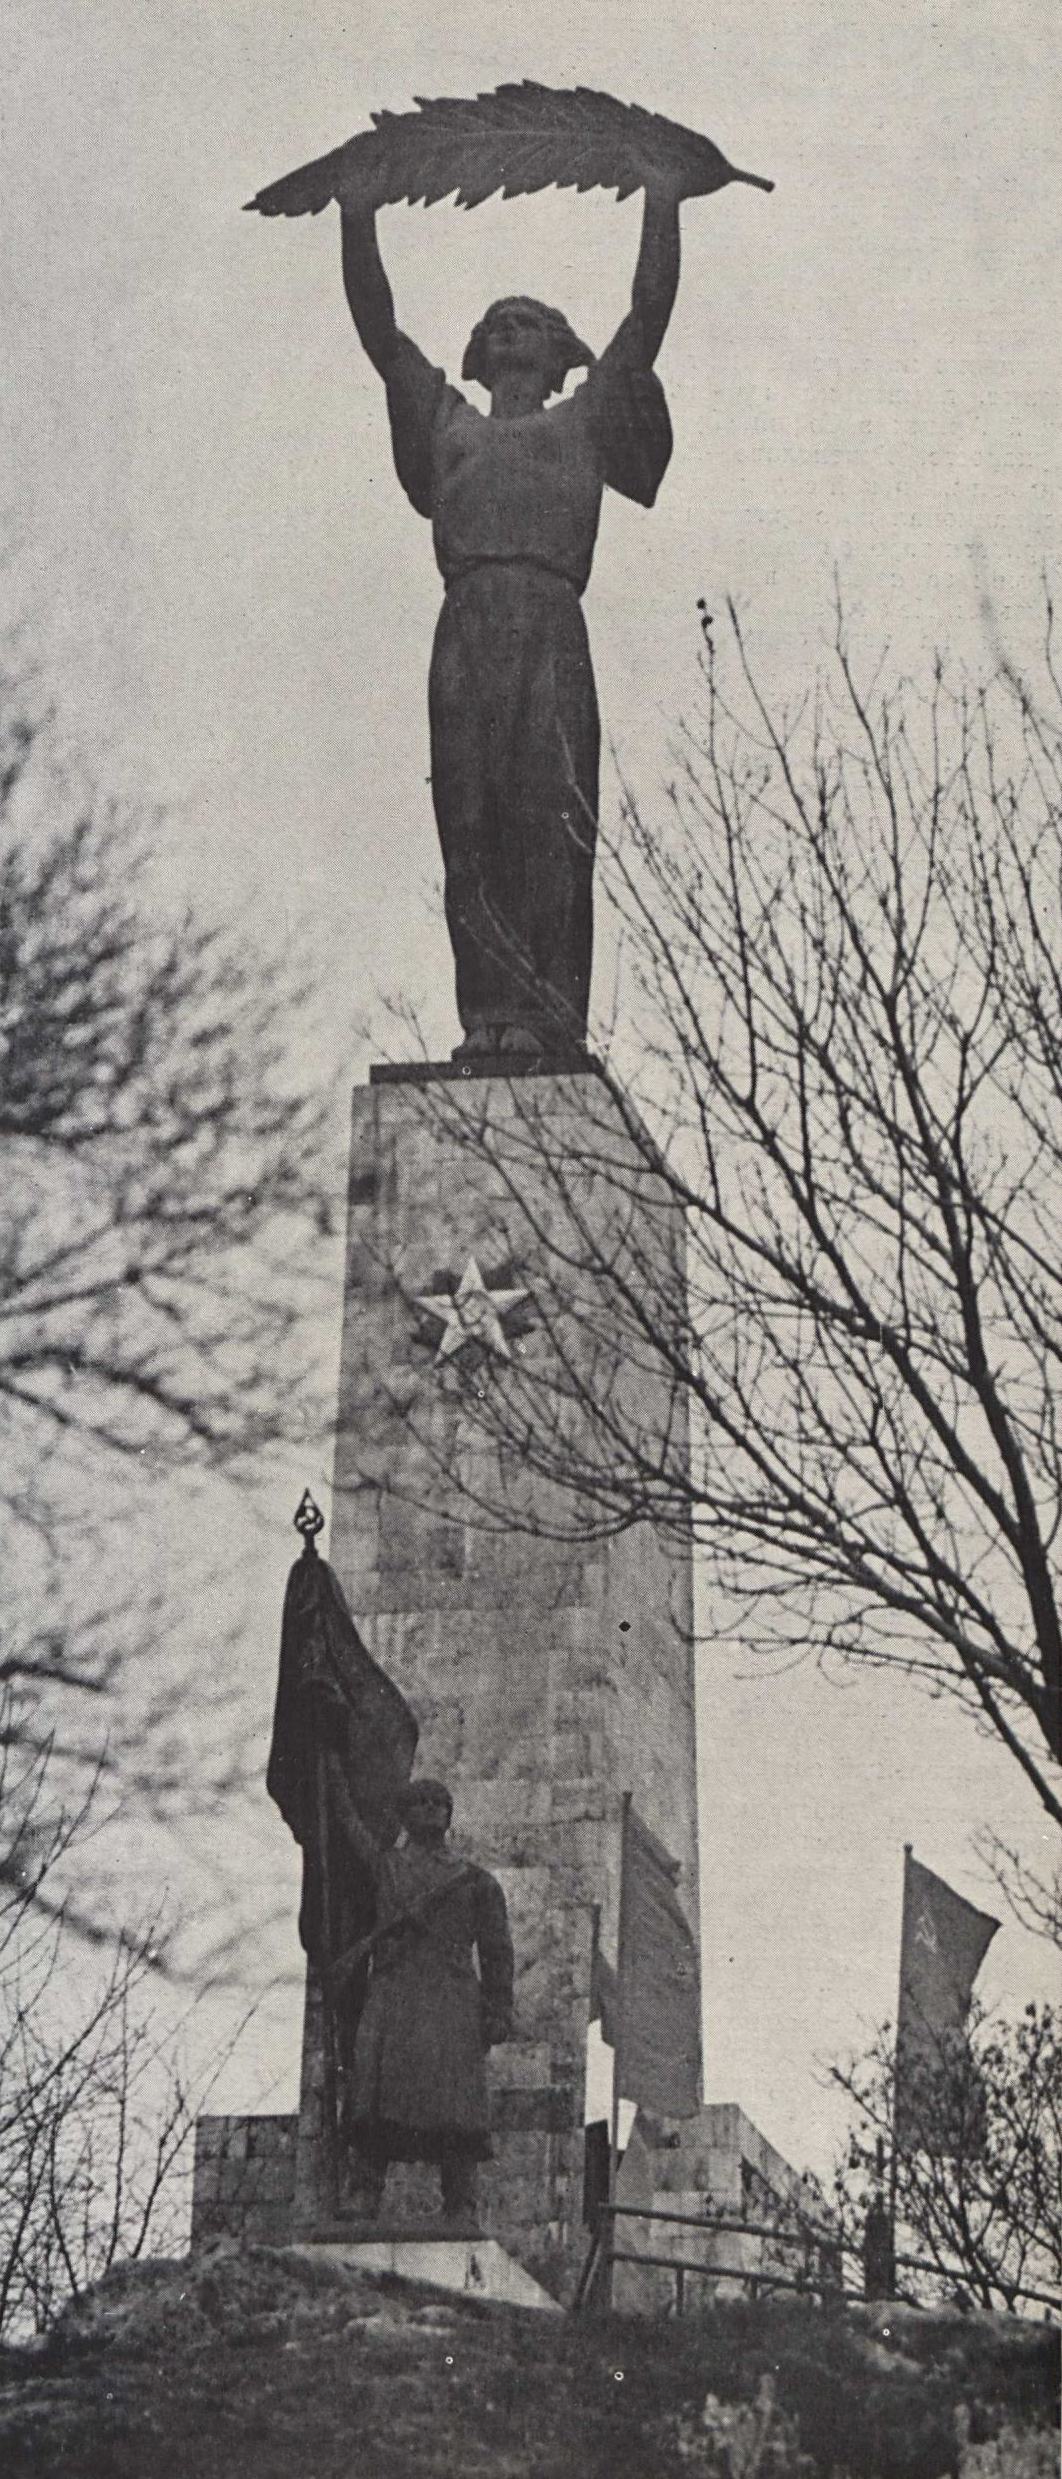 Ж. Кишфалуди-Штробль. Памятник Освобождения. 1947. Будапешт, Венгрия